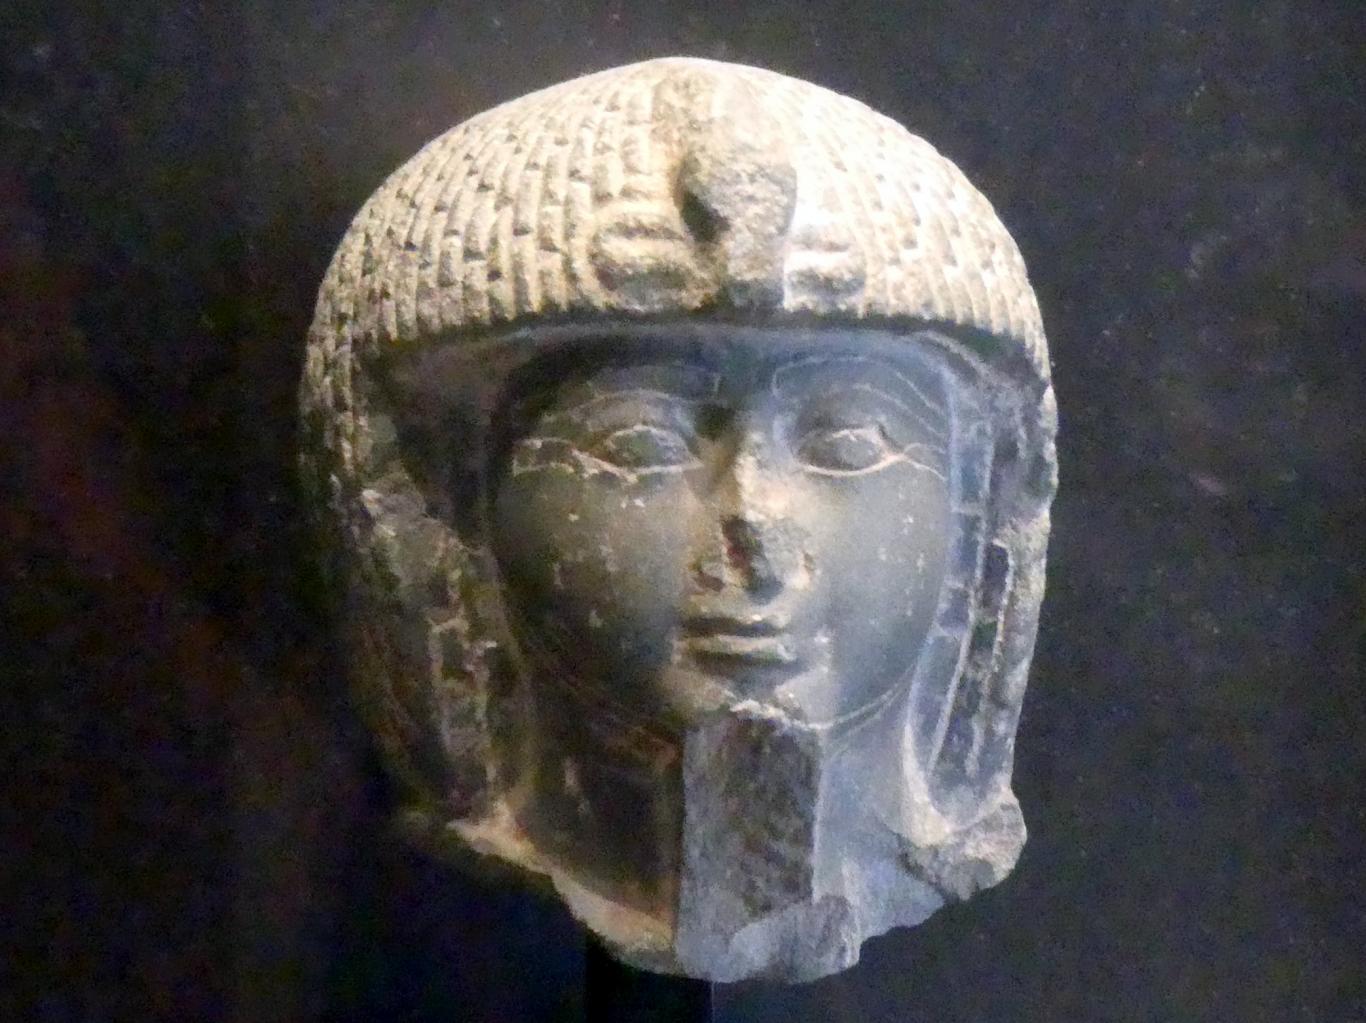 Kopf einer königlichen Stabträgerstatue, 19. Dynastie, 966 - 859 v. Chr., 1280 - 1150 v. Chr.